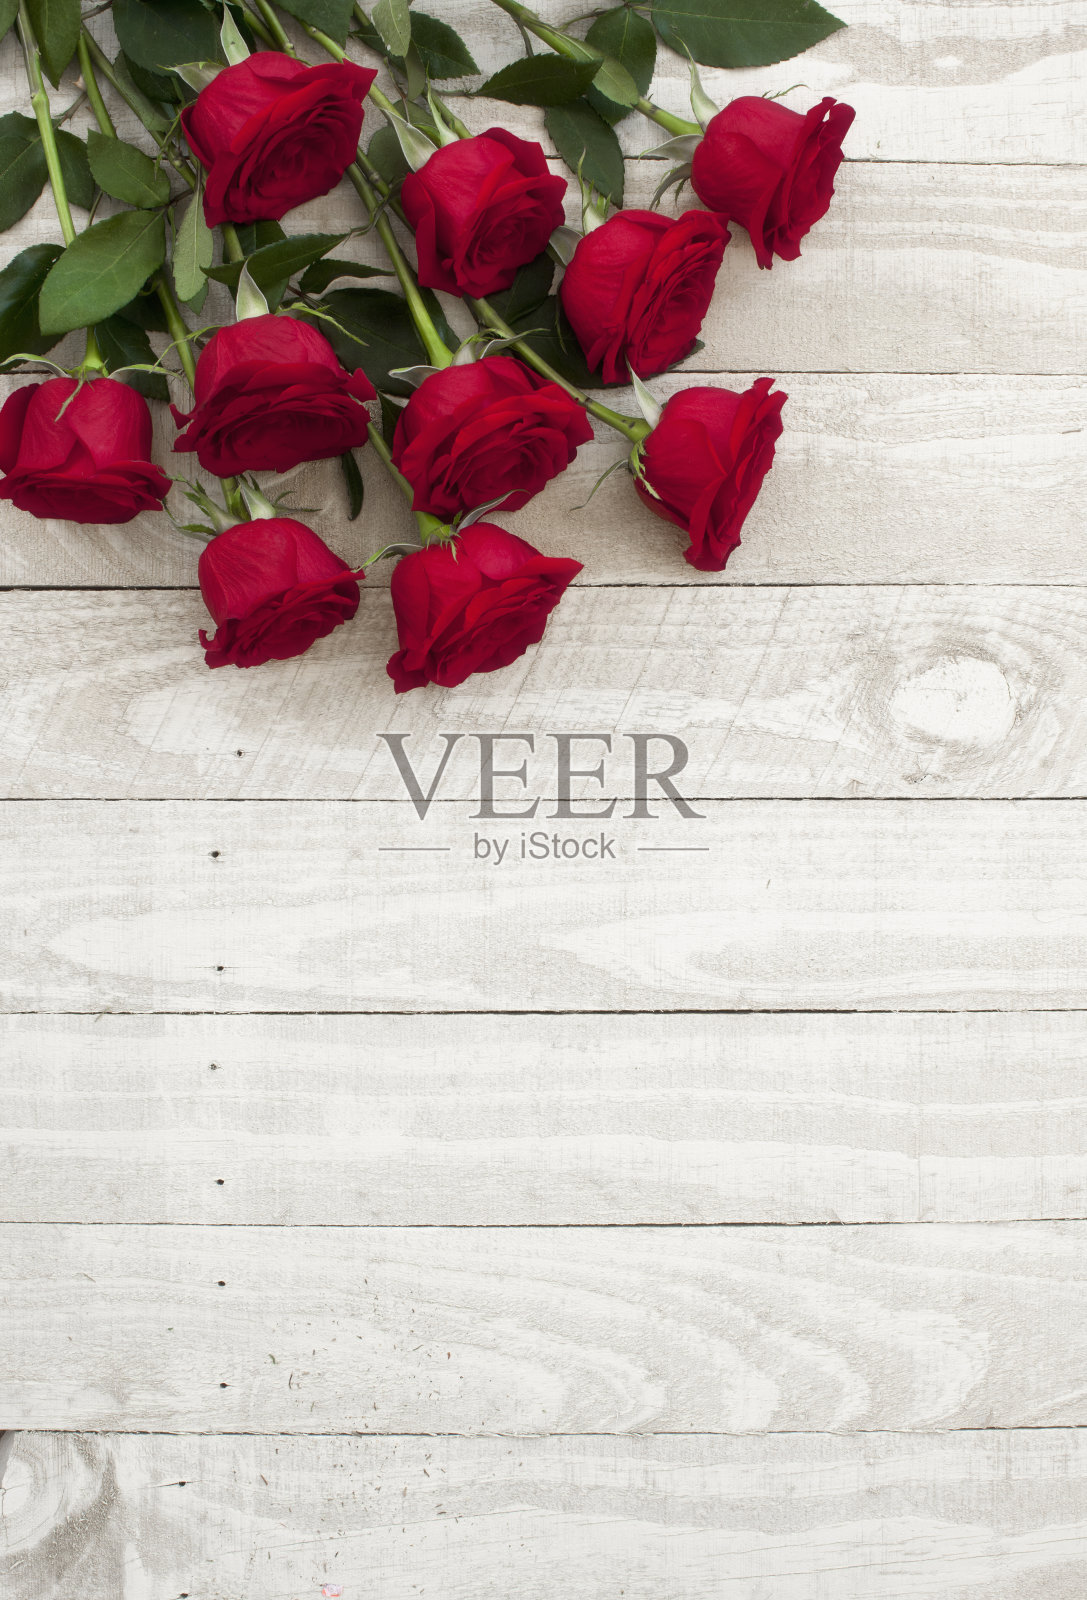 情人节的红玫瑰花束放在古朴的木桌上照片摄影图片